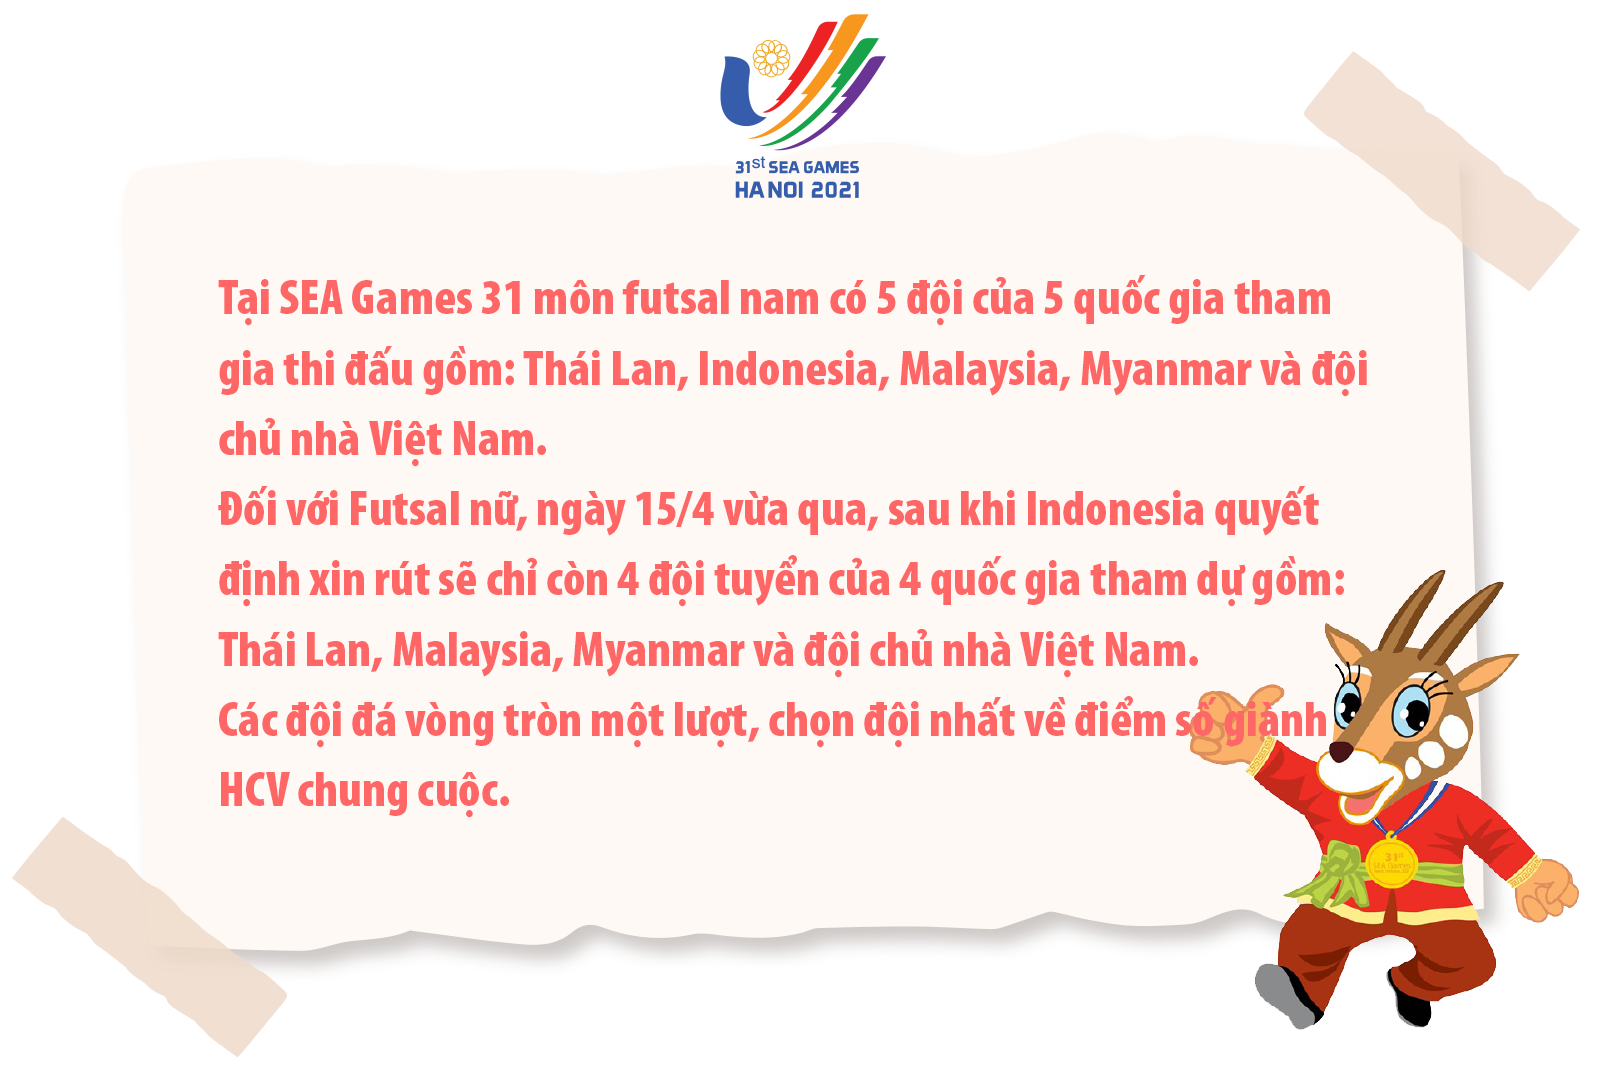 SEA Games 31 là cơ hội để Hà Nam khẳng định năng lực tổ chức các giải thể thao lớn